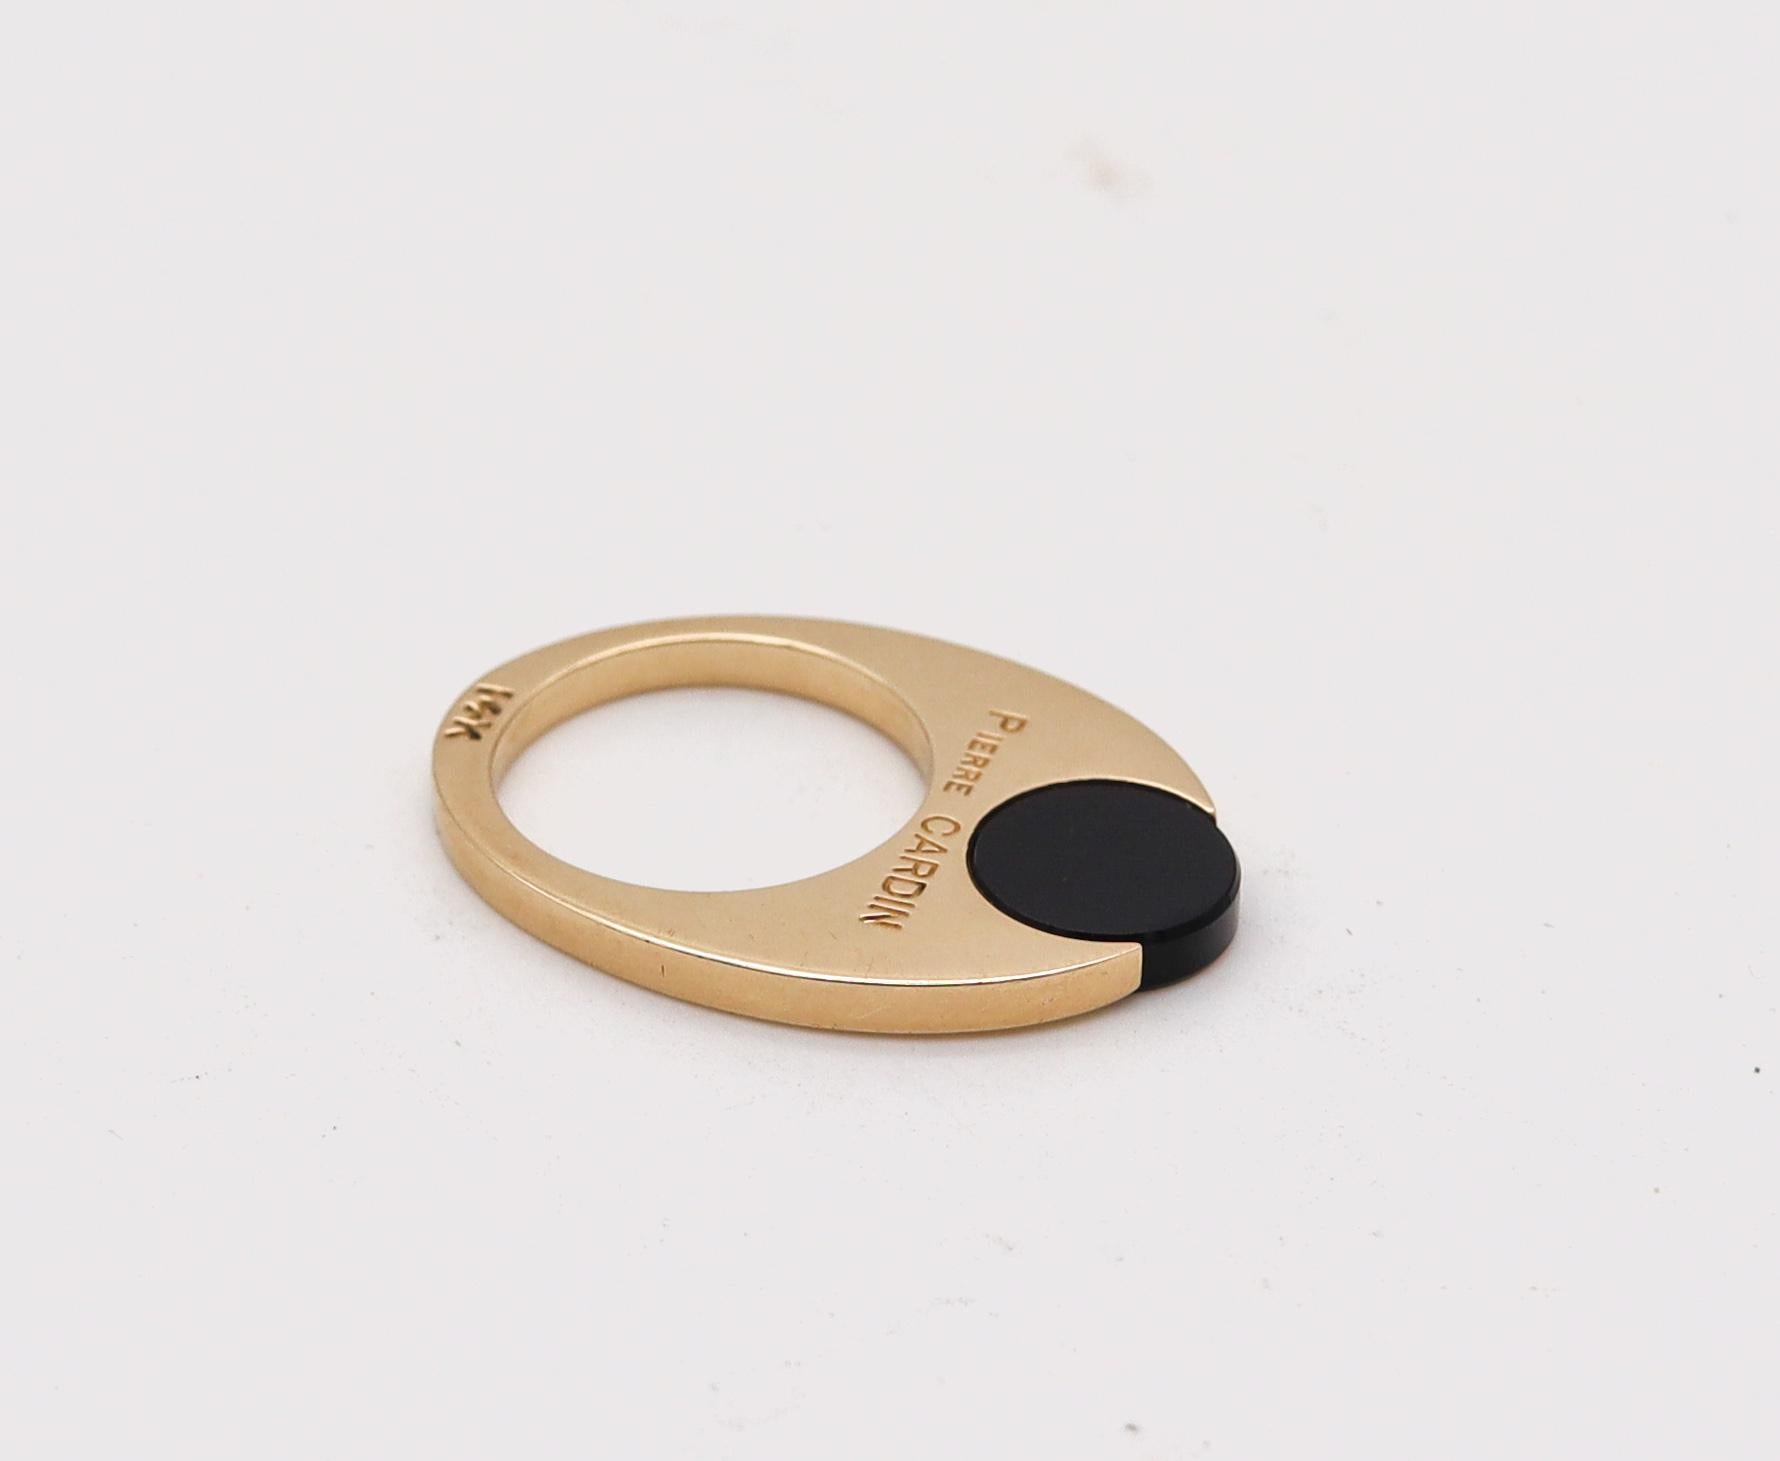 Geometrischer Ring, entworfen von Dinh Van für Pierre Cardin.

Wunderschönes modernistisches Stück, das Dinh Van in Frankreich in den 1970er Jahren für den Pariser Modedesigner Pierre Cardin entworfen hat. Dieser geometrische, skulpturale Ring wurde